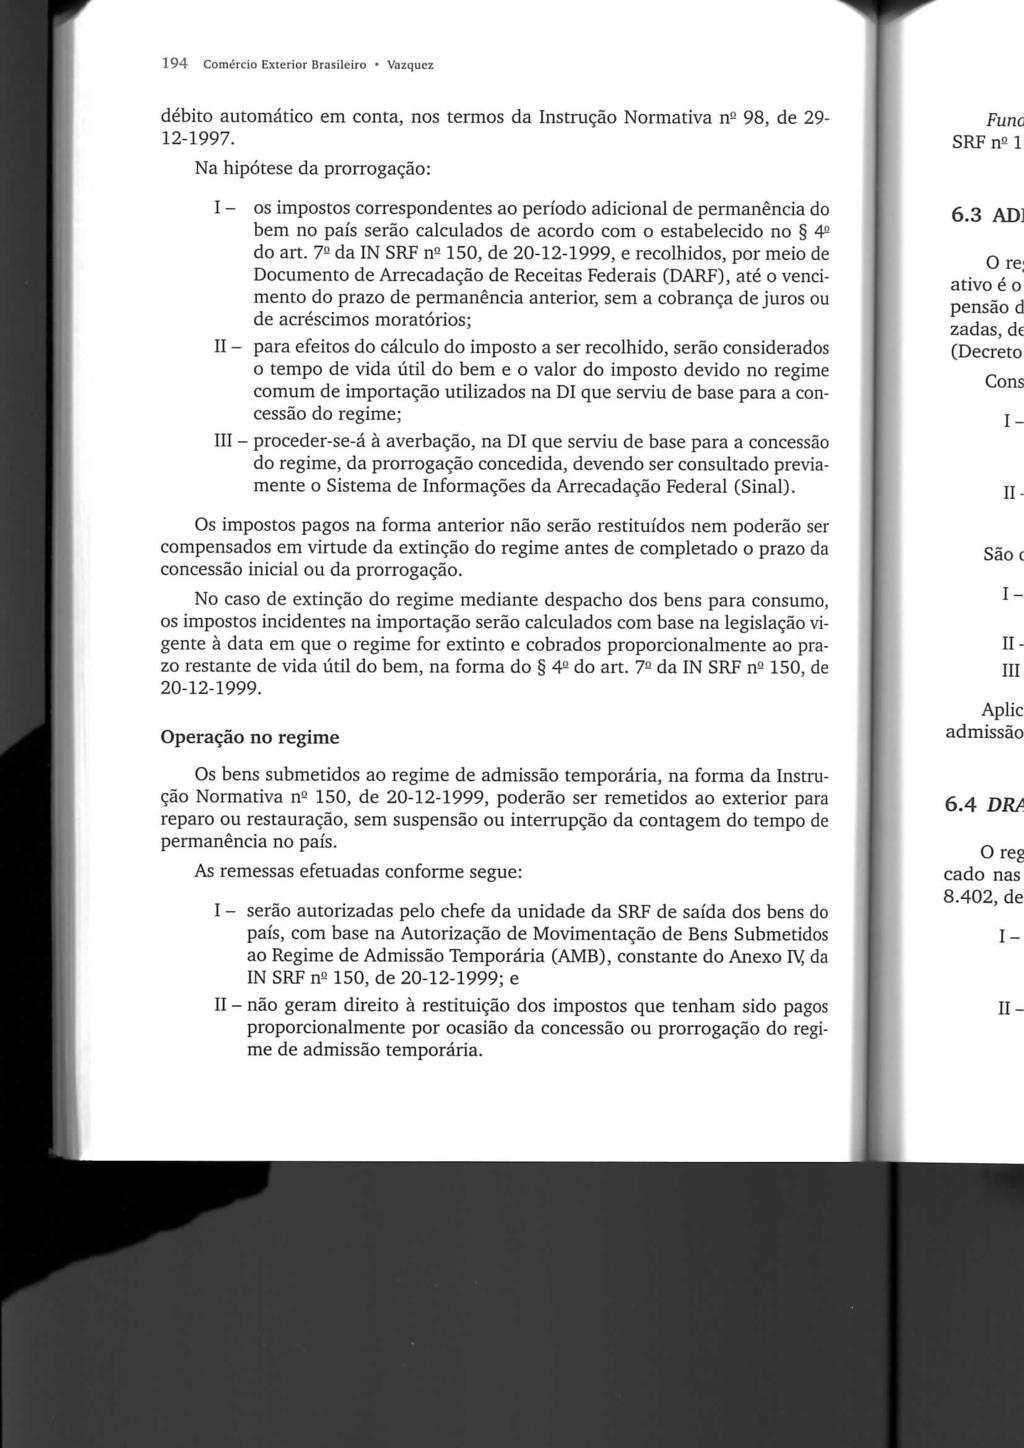 194 Comércio Exterior Brasileiro * Vazquez débito automático em conta, nos termos da Instrução Normativa n- 98, de 29-12-1997.